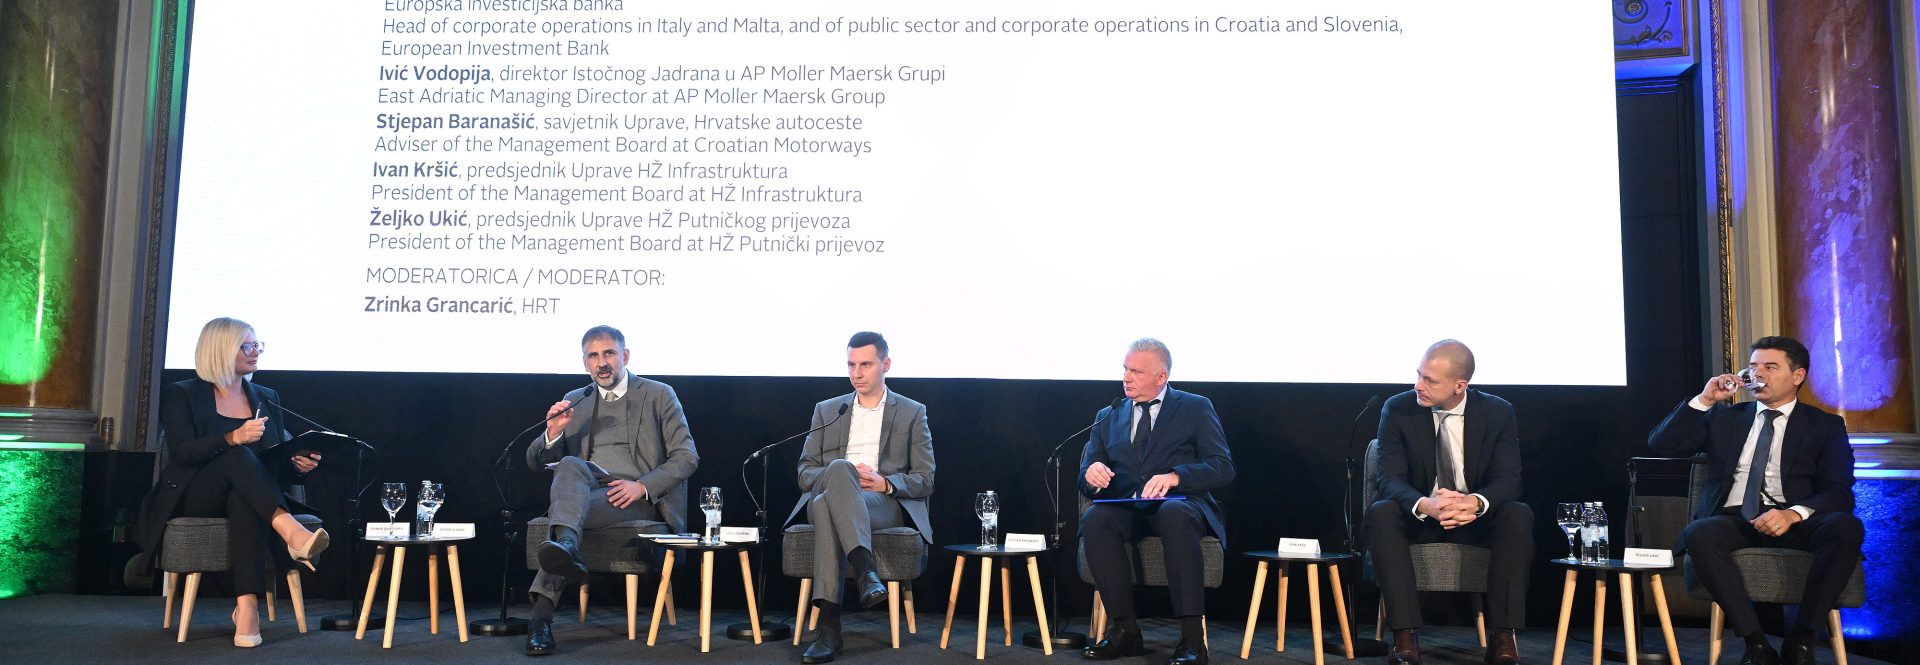 Povezana Hrvatska: ozelenjavanje mobilnosti